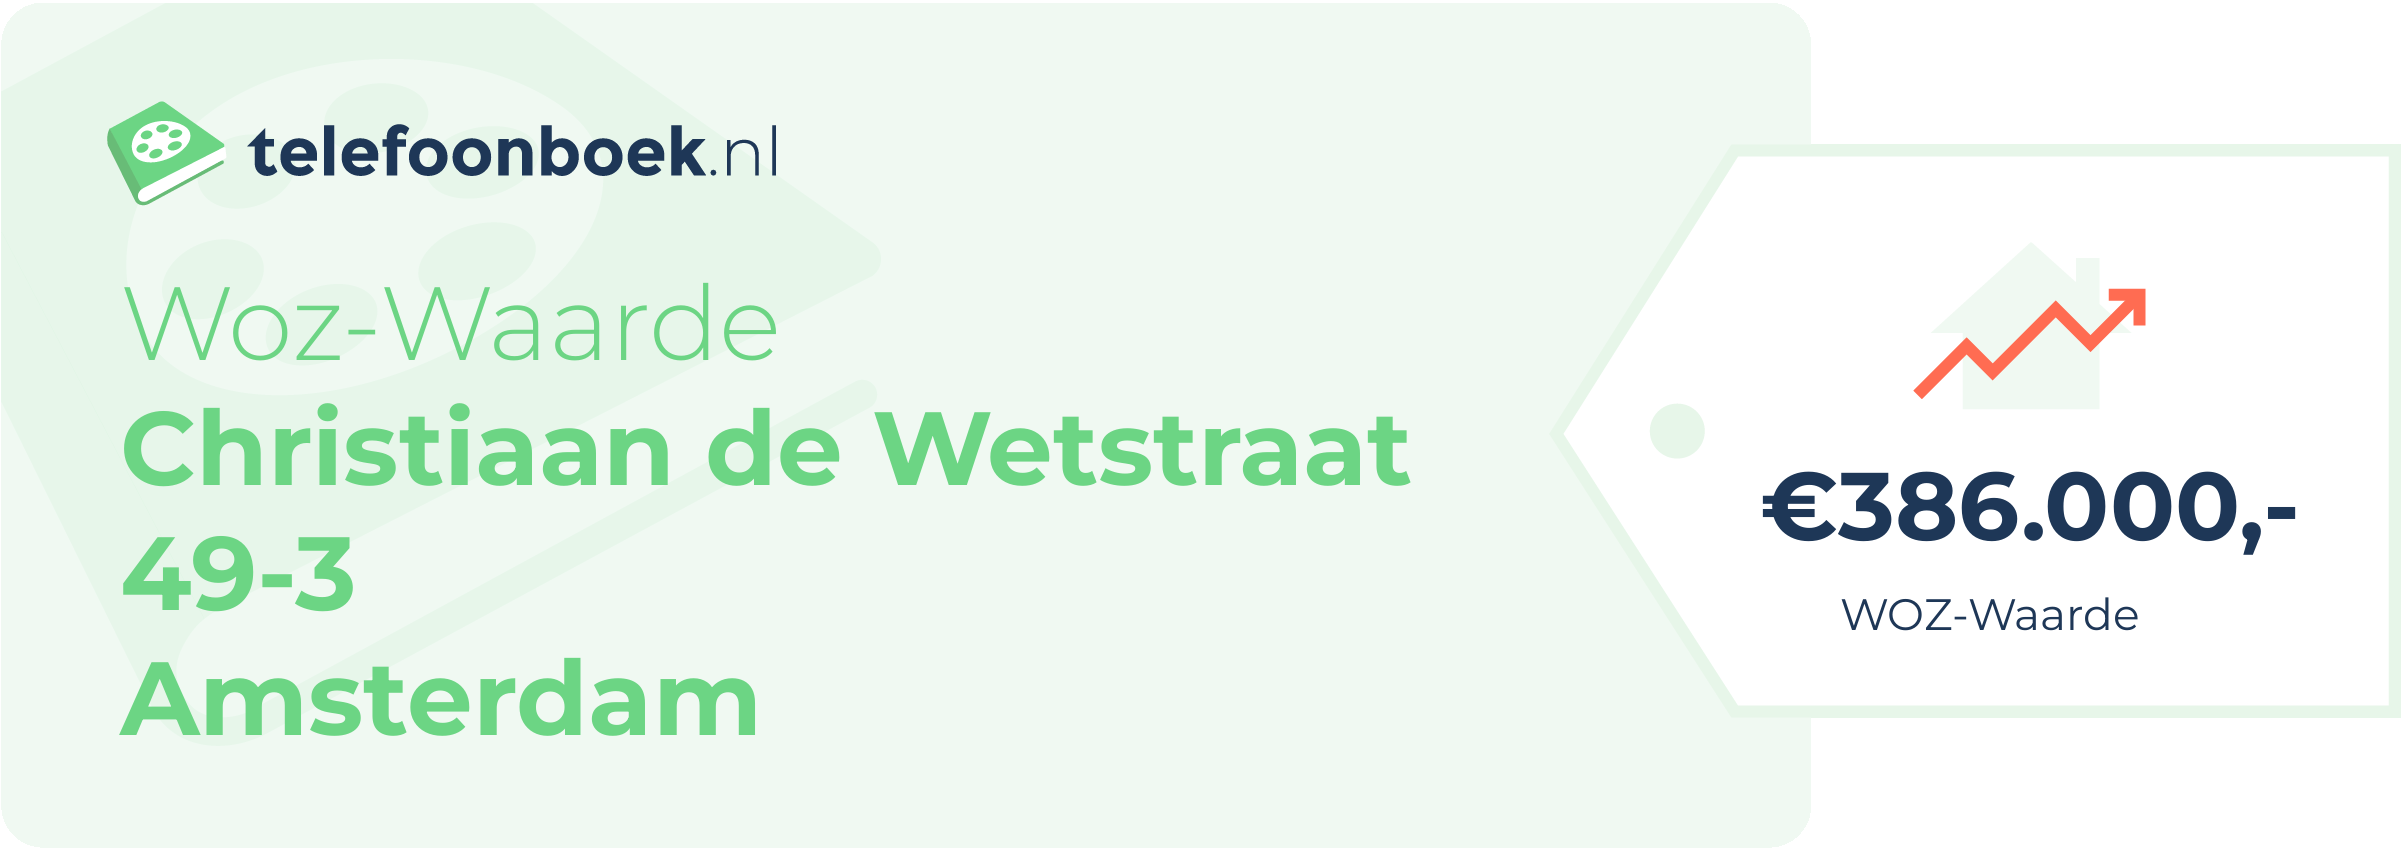 WOZ-waarde Christiaan De Wetstraat 49-3 Amsterdam